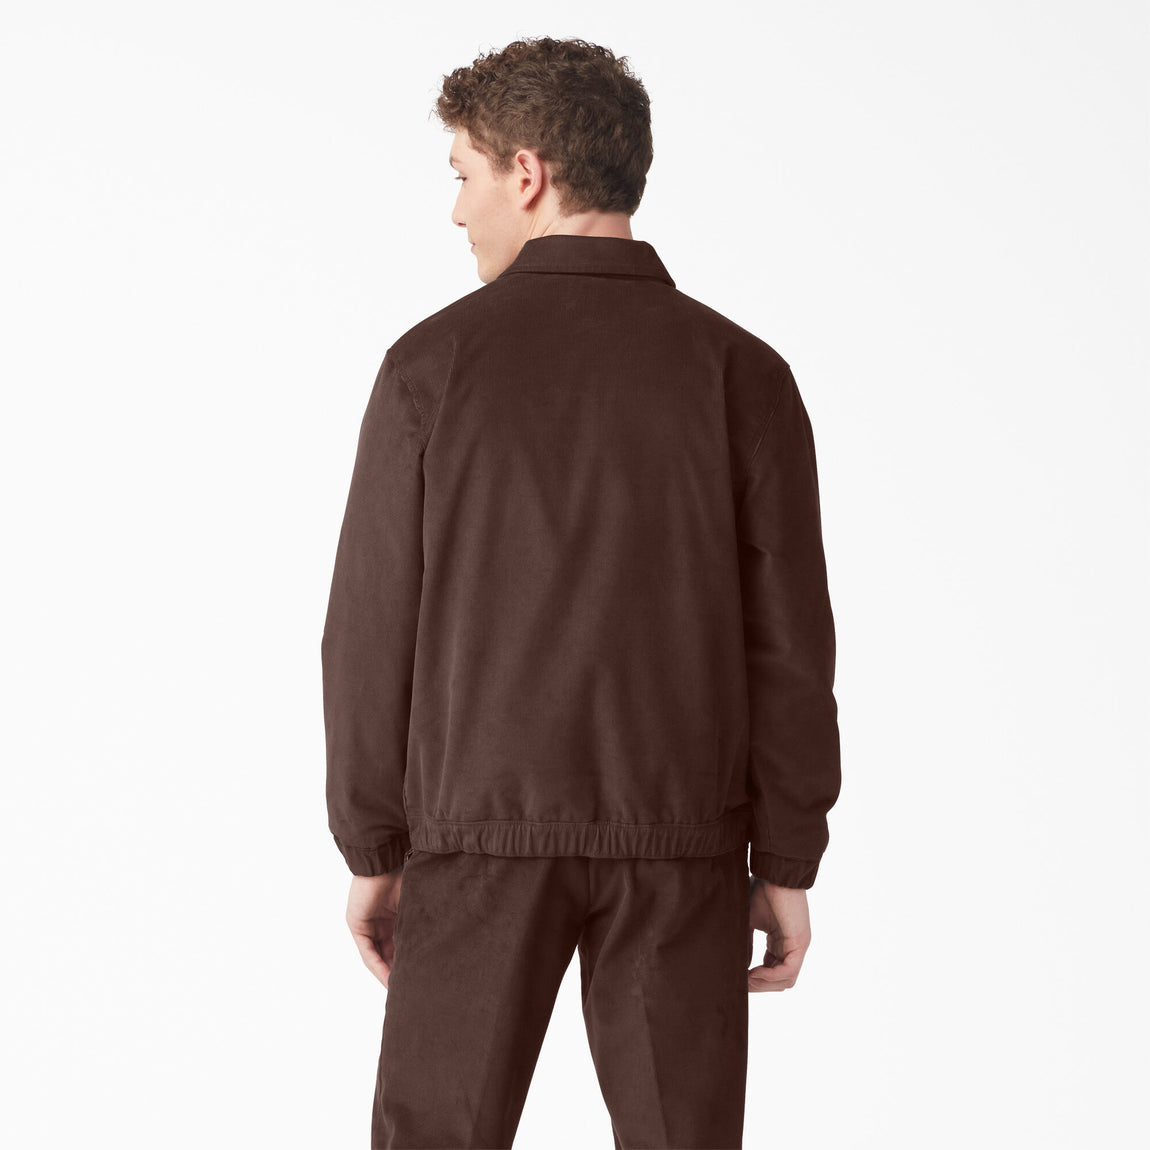 Dickies Lined Corduroy Jacket (Chocolate Brown) - Dickies Lined Corduroy Jacket (Chocolate Brown) - 